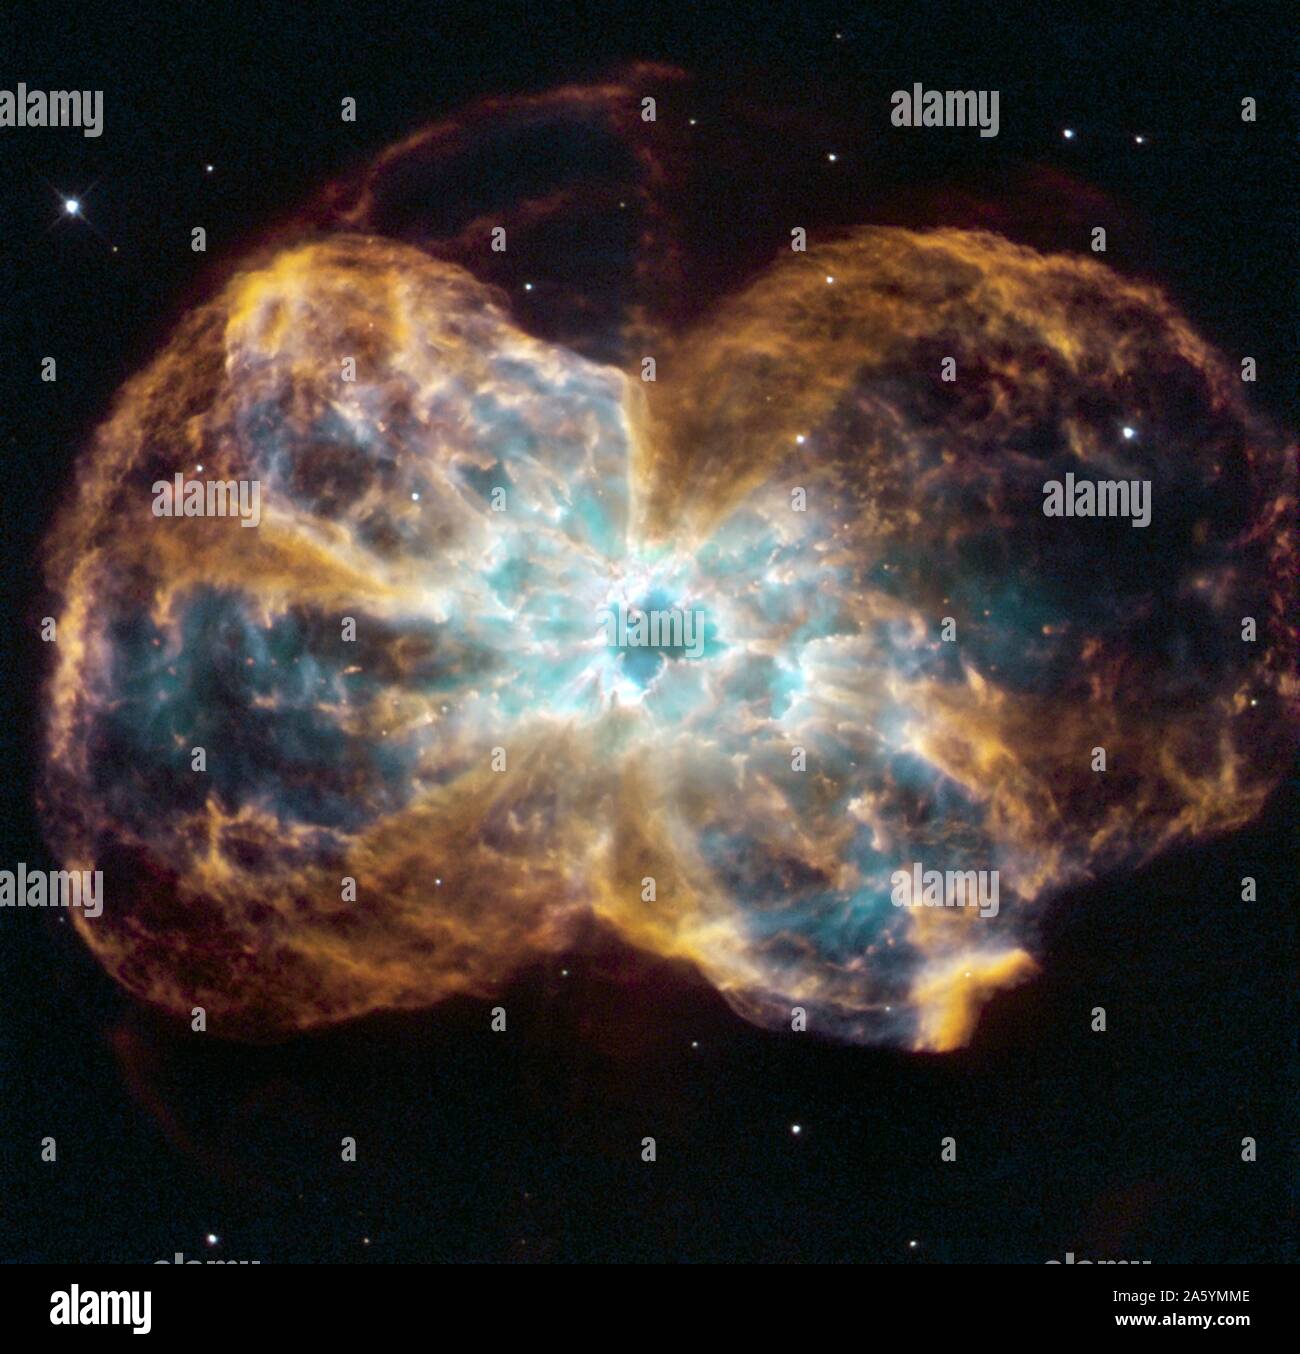 Der Stern ist das Ende ihrer Lebensdauer, indem Sie seine äußeren Schichten, die einen Kokon um die Sterne verbleibenden Kern geformt. Uv-Licht aus dem sterbenden Stern macht das Material zum Glühen. Die Ausgebrannten Stern, ein Weißer Zwerg genannt wird, ist der weiße Punkt in der Mitte. Hubble Space Telescope (HST). Stockfoto